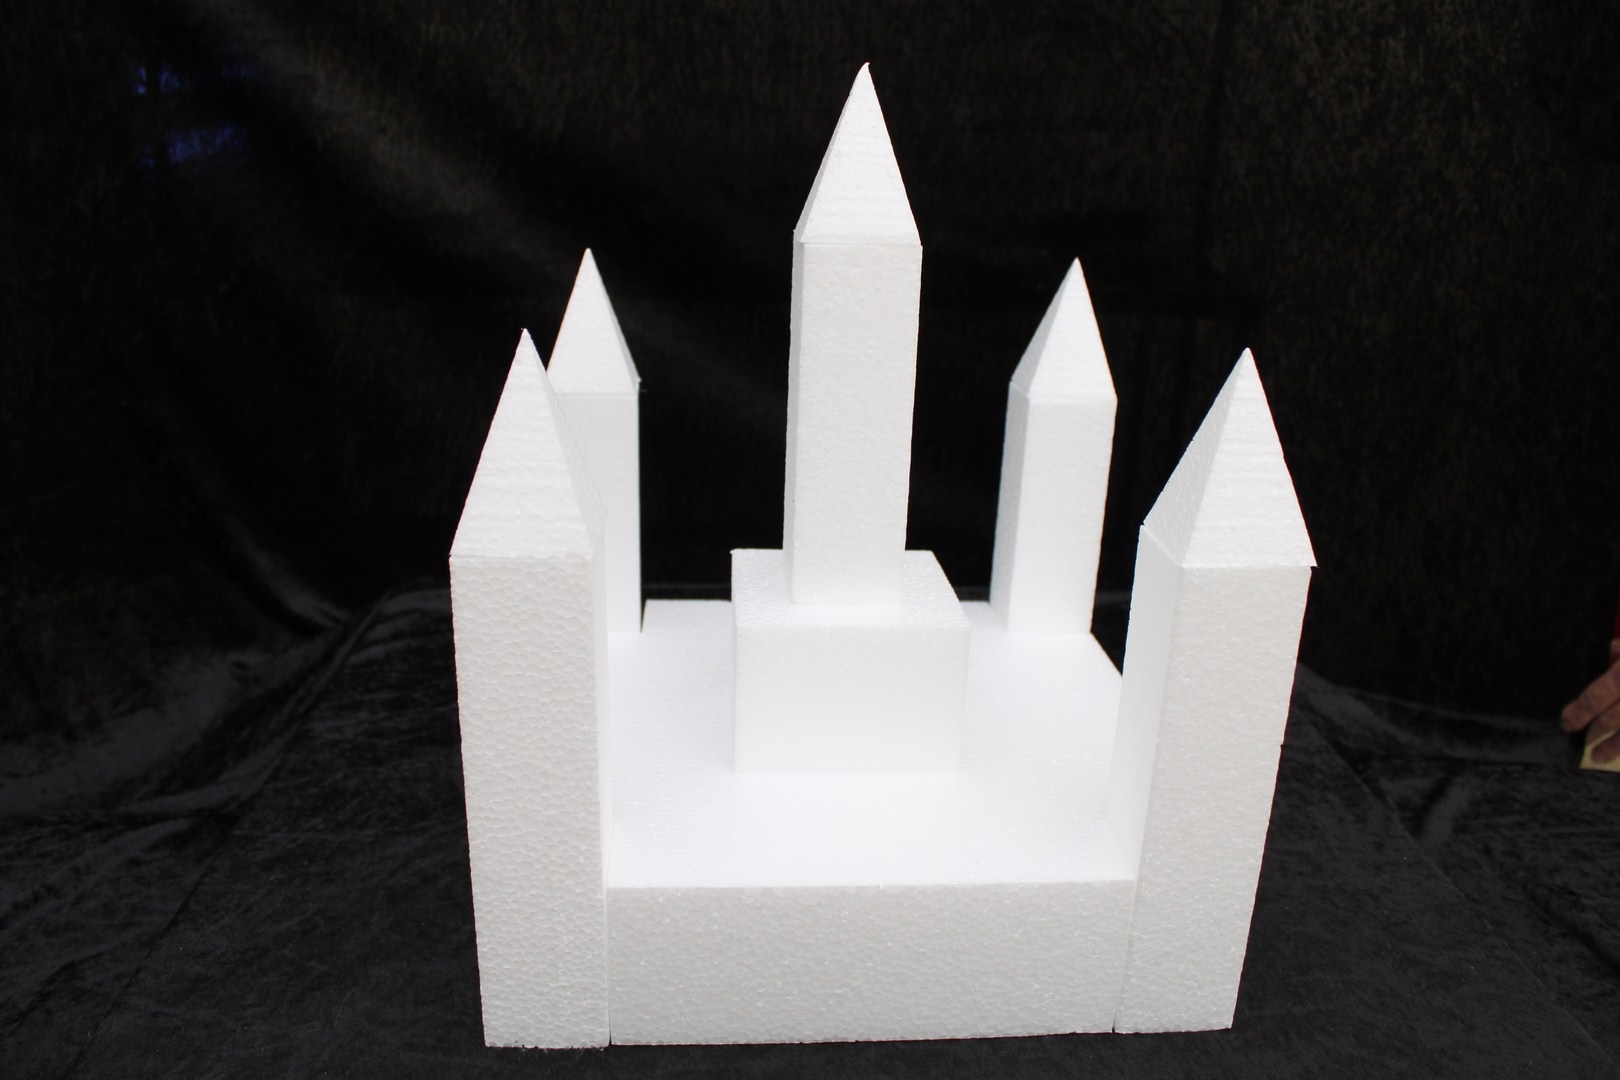 Castle cake dummy set 12 pcs - 30 x 30 cm, 35 cm high